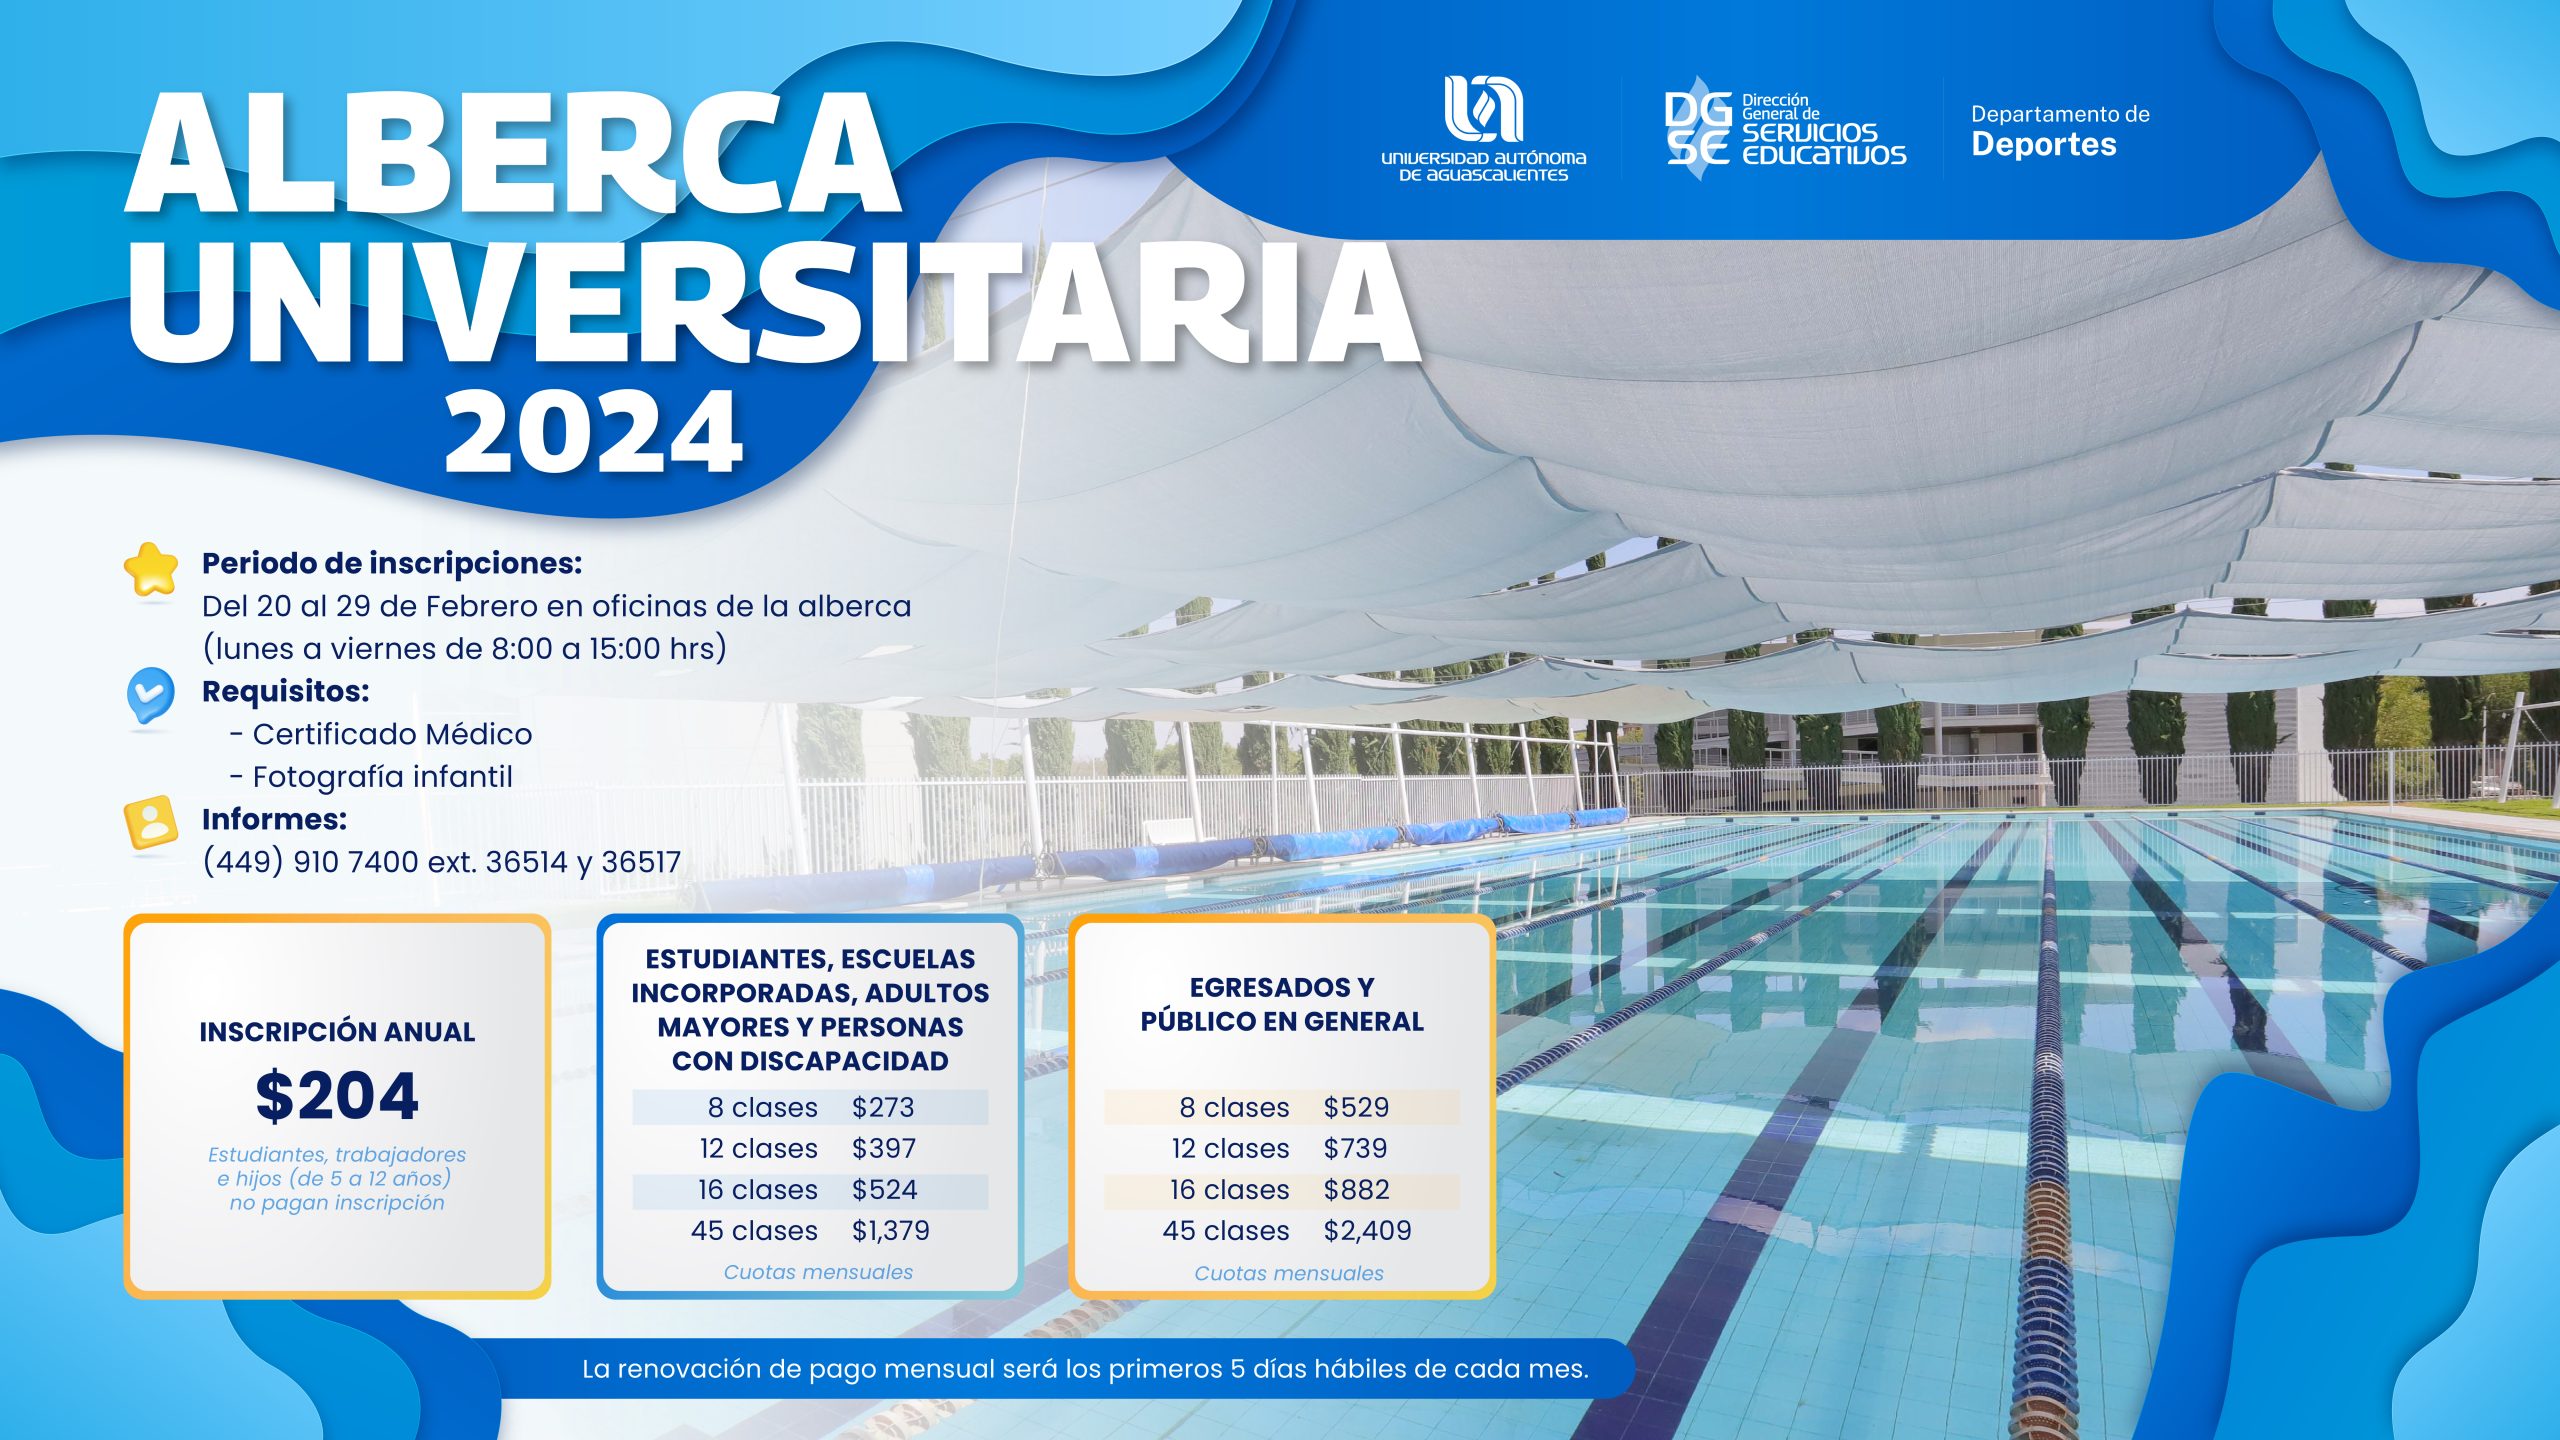 ALBERCA UNIVERSITARIA 2024